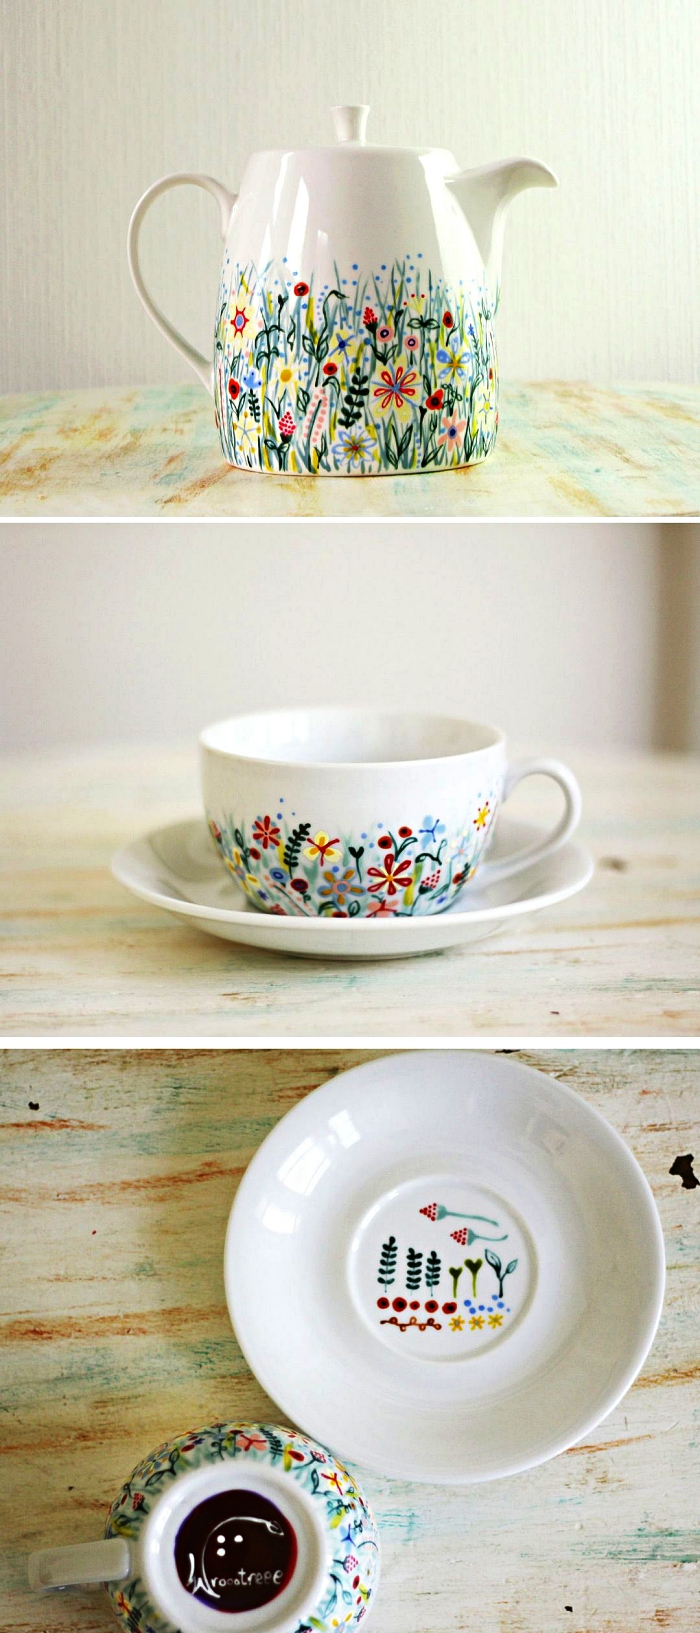 théière et tasse à café personnalisées avec des motifs floraux à la peinture porcelaine